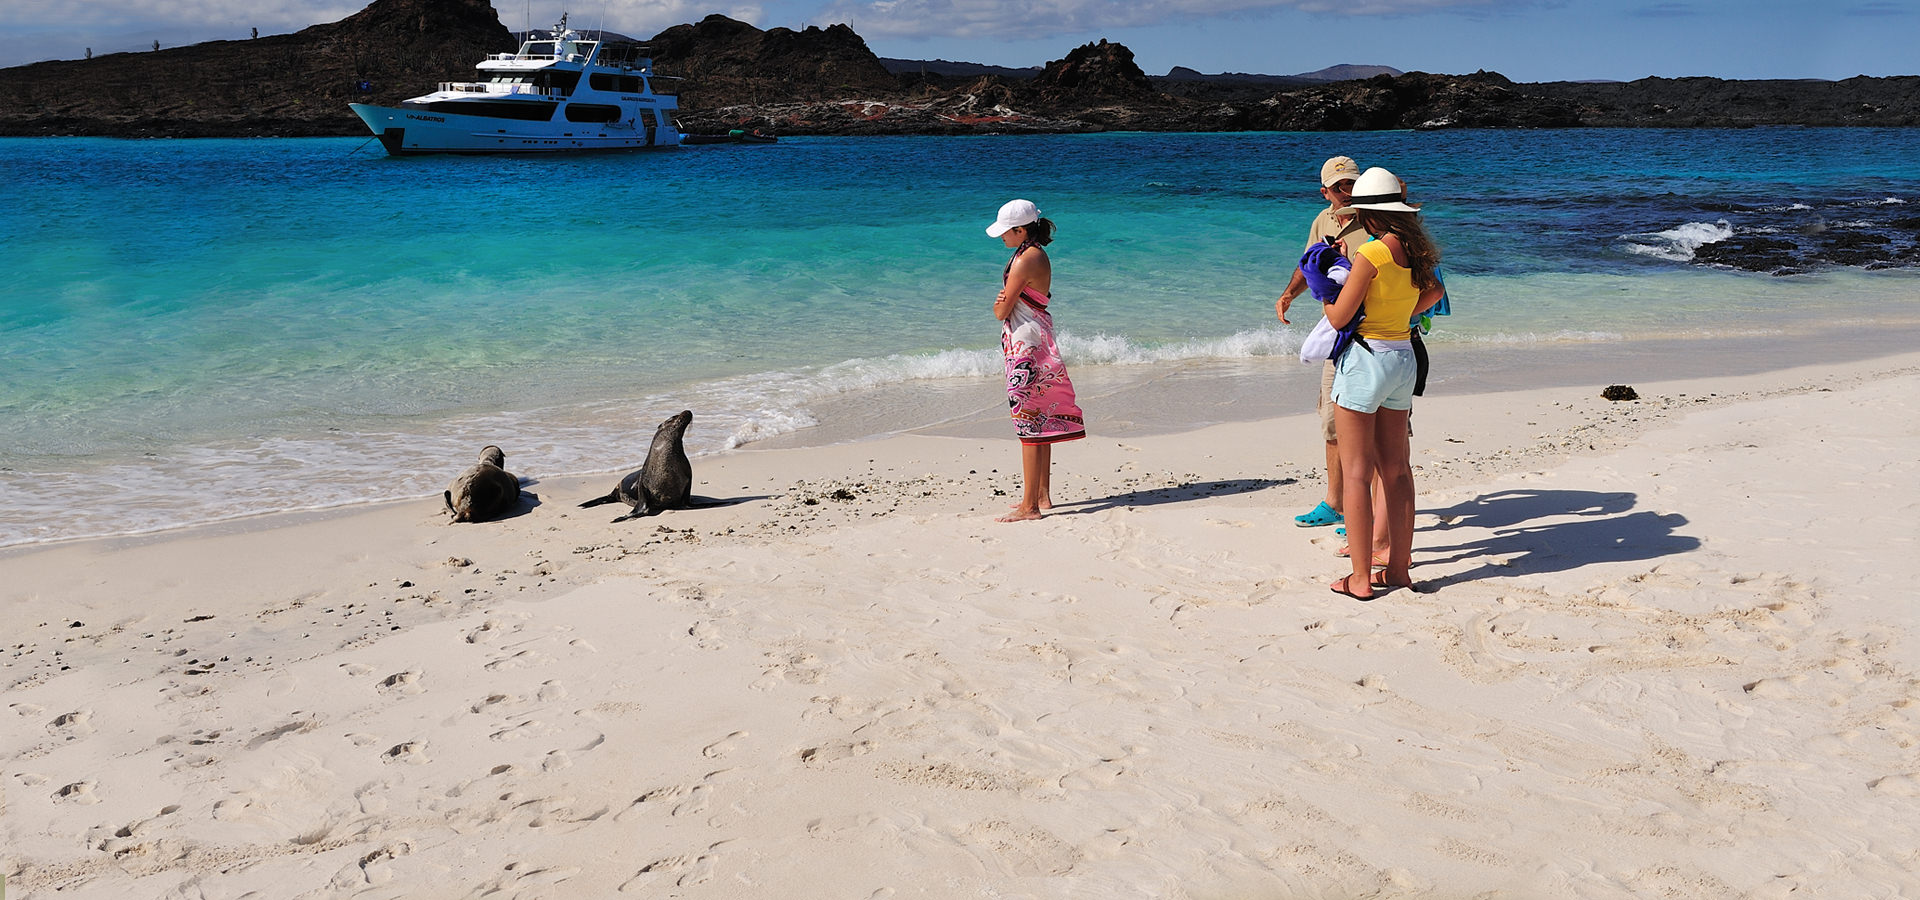 Paquetes de viajes baratos a las Islas Galápagos gracias al Mintur. Ministerio de Turismo del Ecuador